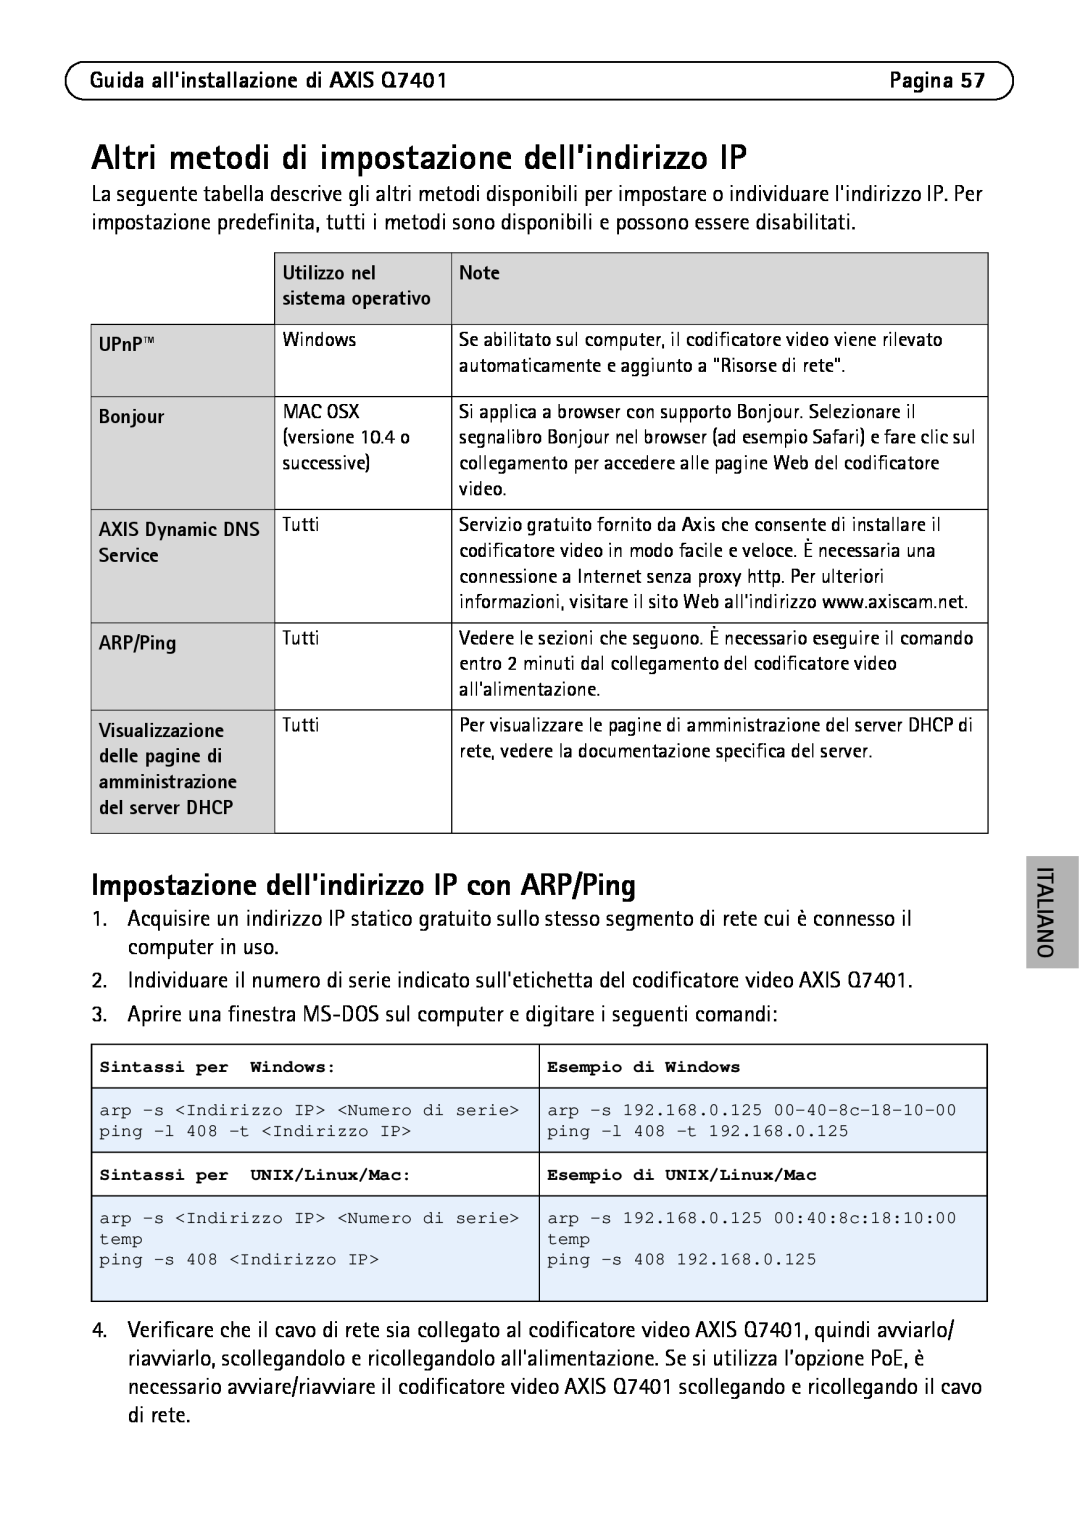 Axis Communications Q7401 manual Altri metodi di impostazione dell’indirizzo IP, Impostazione dellindirizzo IP con ARP/Ping 